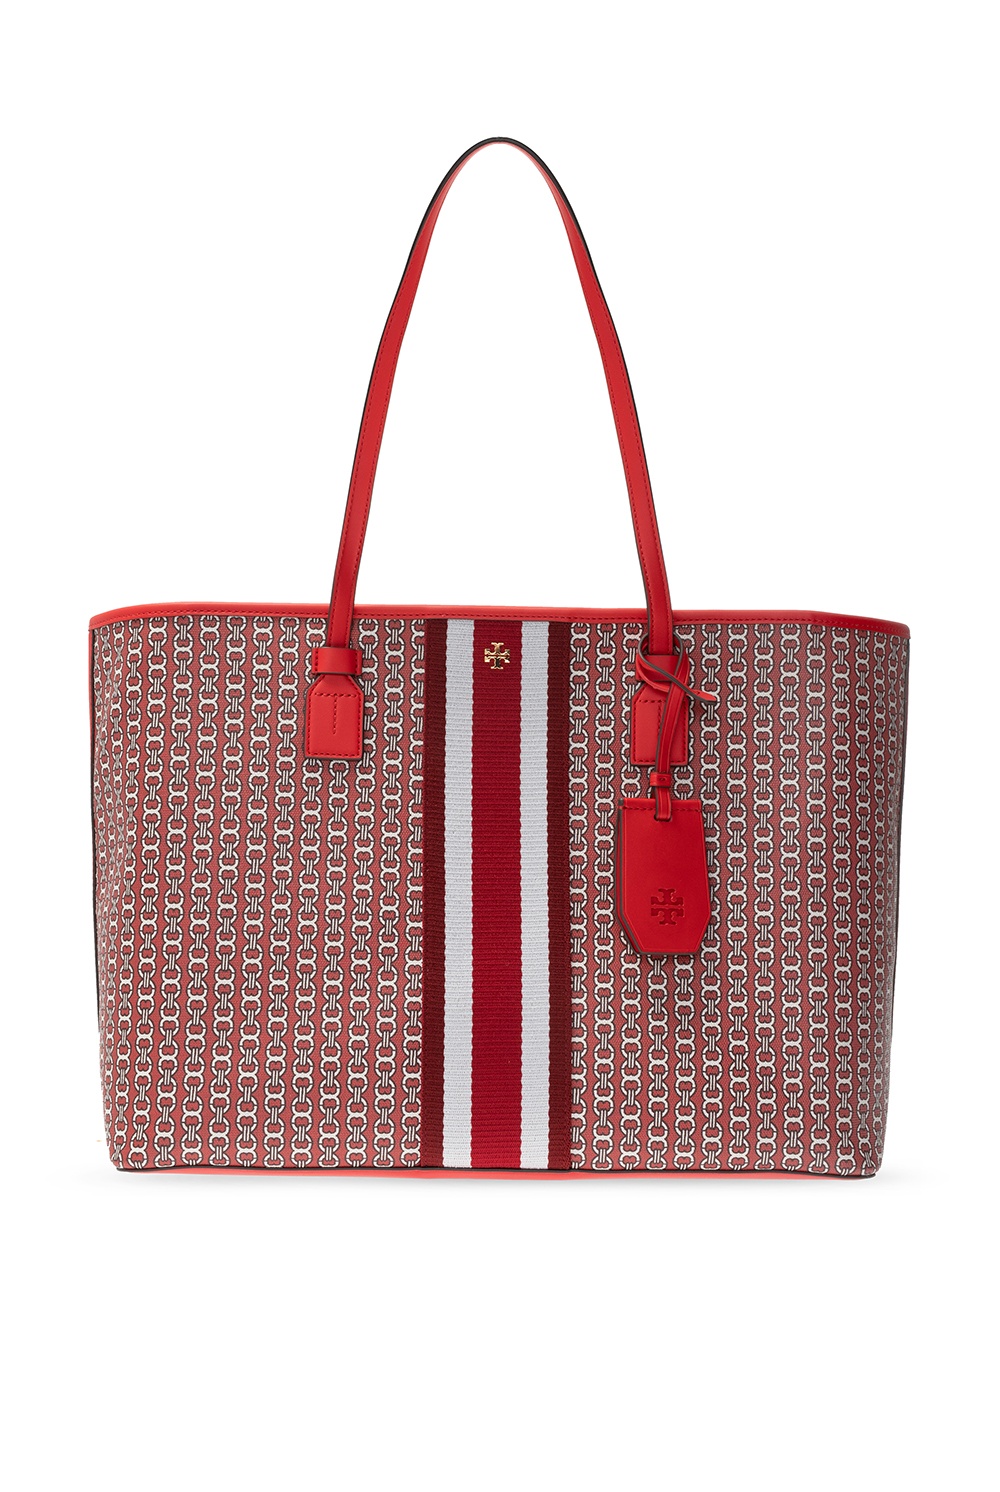 Tory Burch 'Gemini' tote bag, Women's Bags